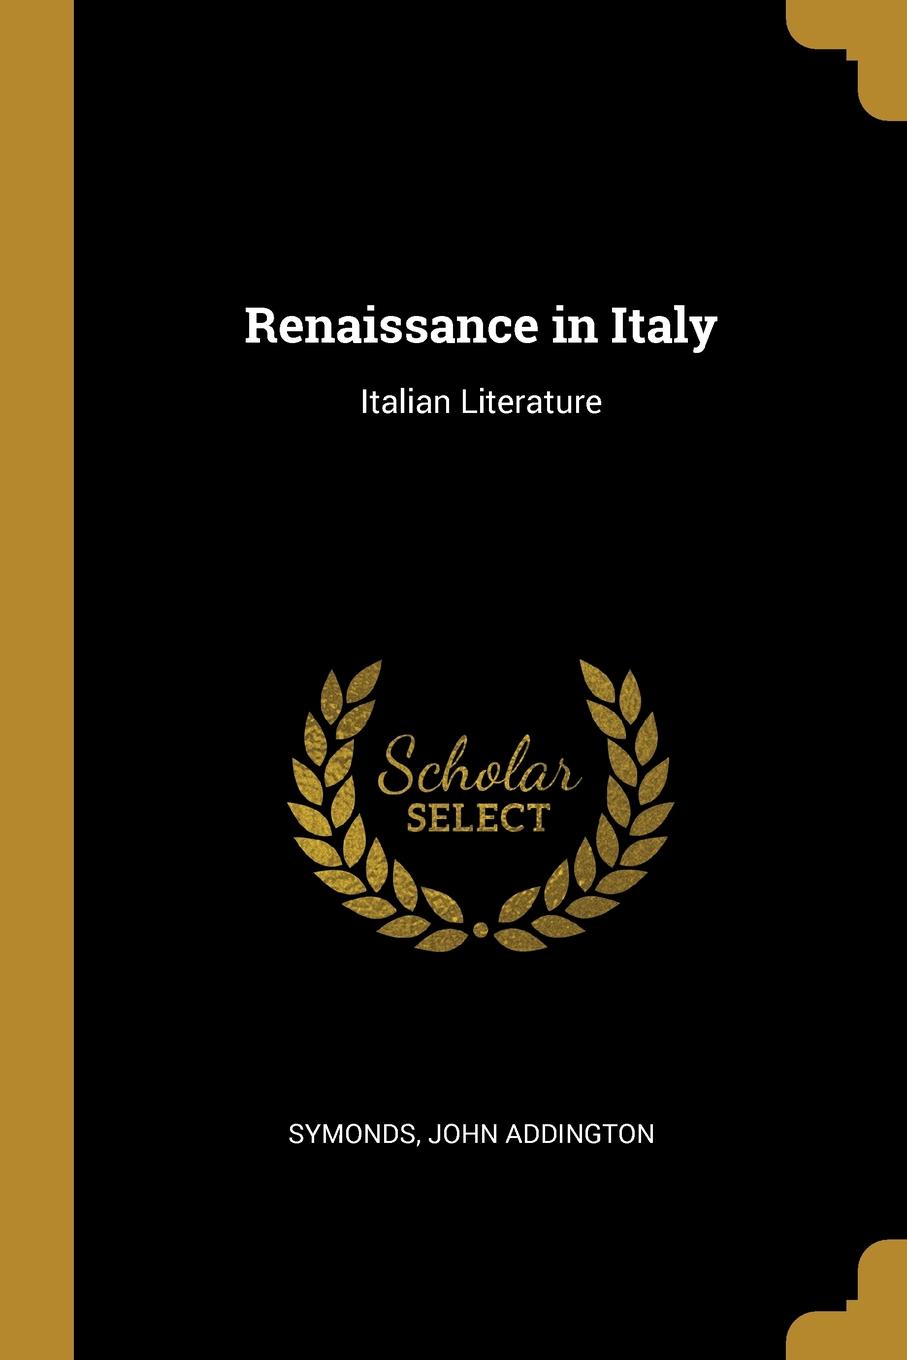 Renaissance in Italy. Italian Literature